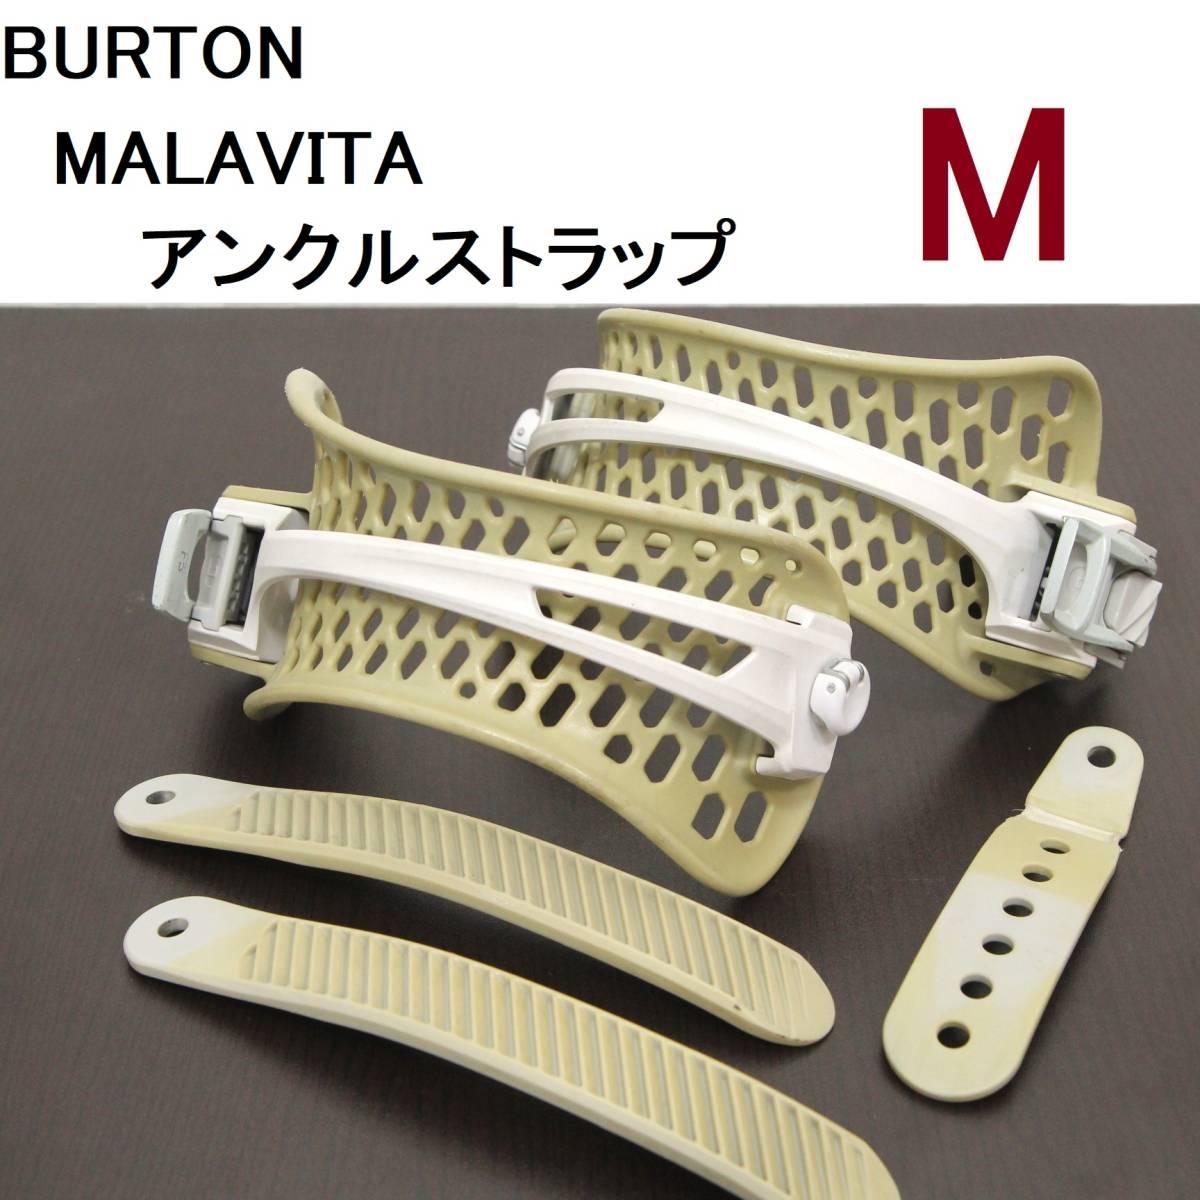 【M】ハンモックアンクルストラップ ラチェット有 DT Malavita Re:Flex EST BURTON バートン バインディング ビンディング 修理 部品231127